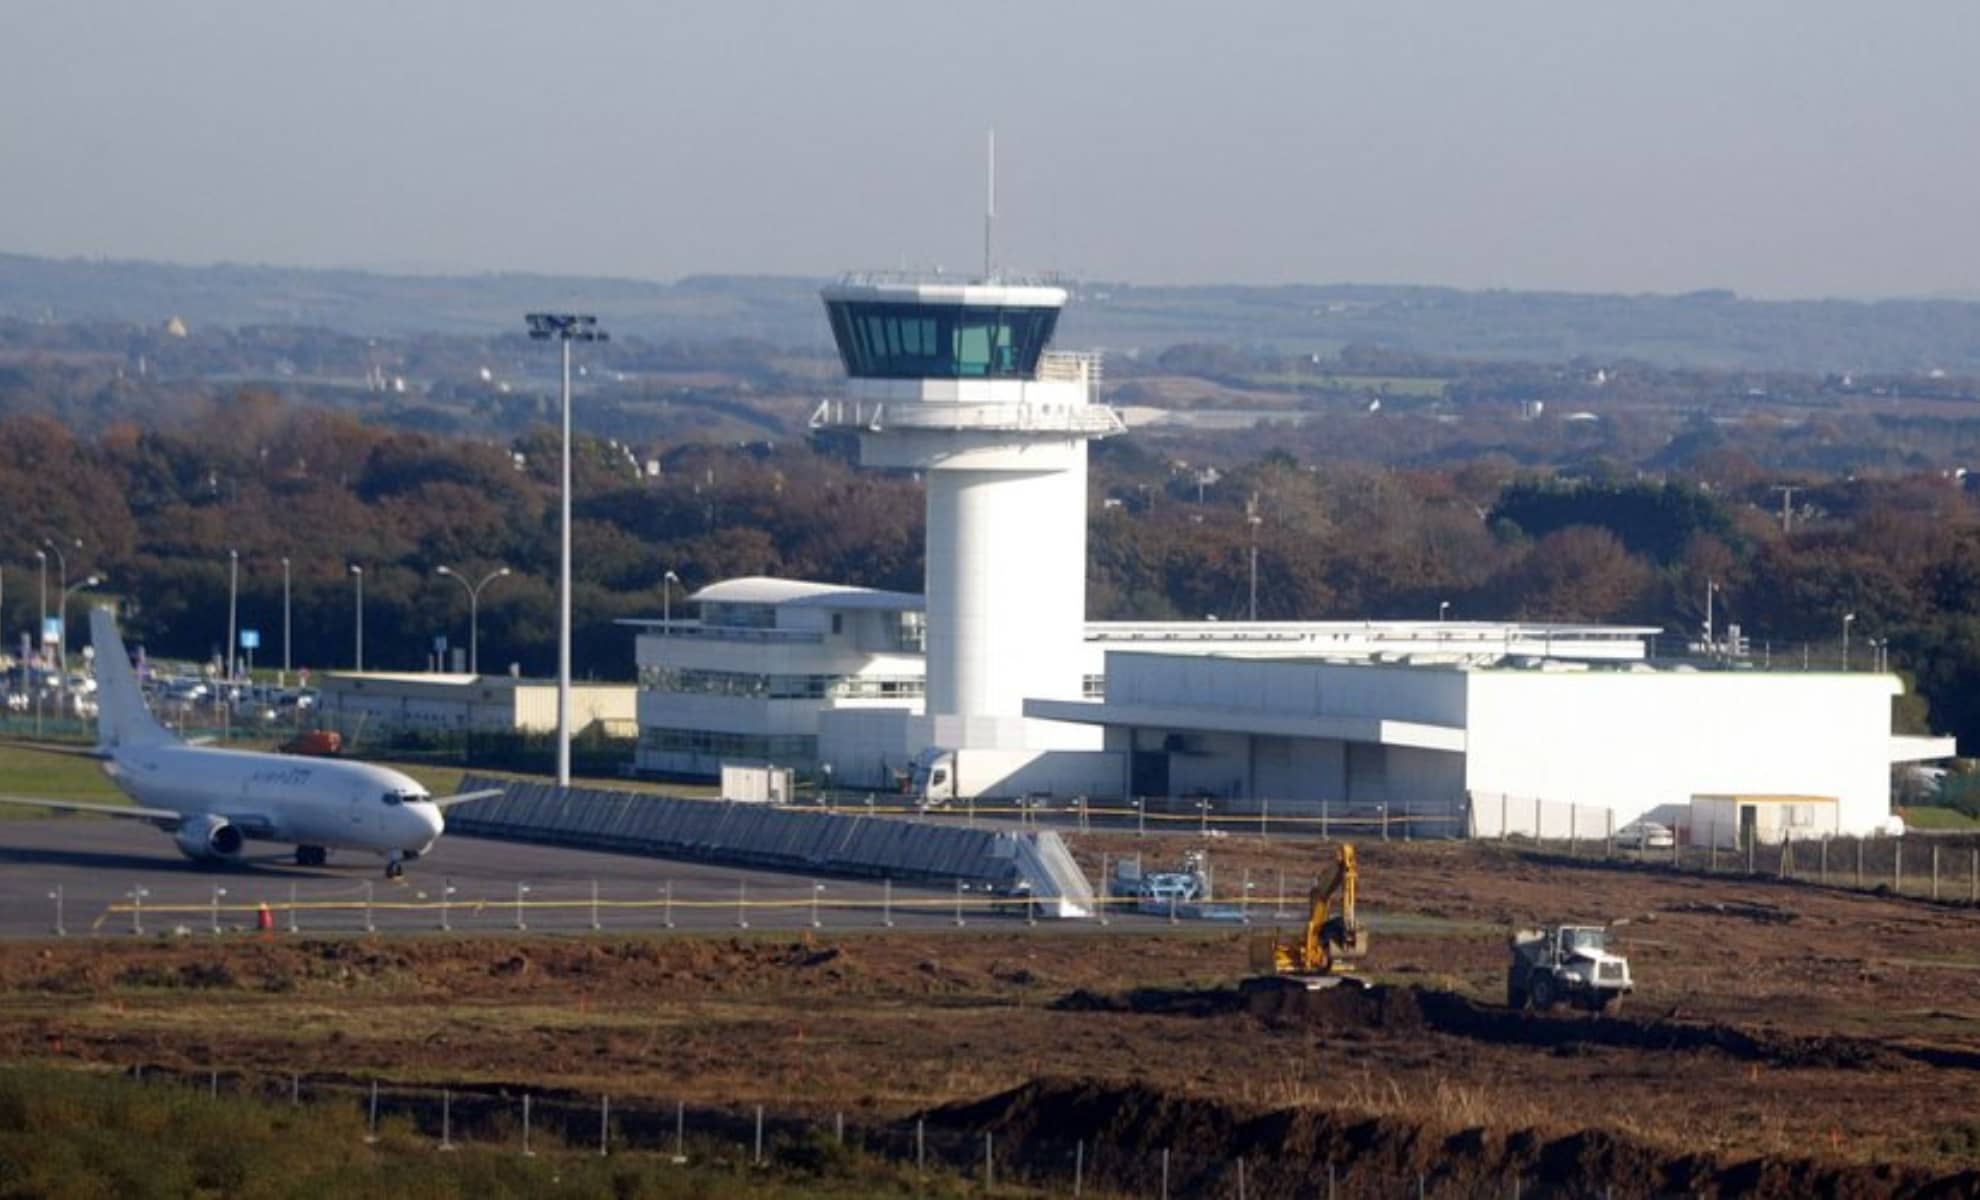 La tour de contrôle de l'aéroport de Brest